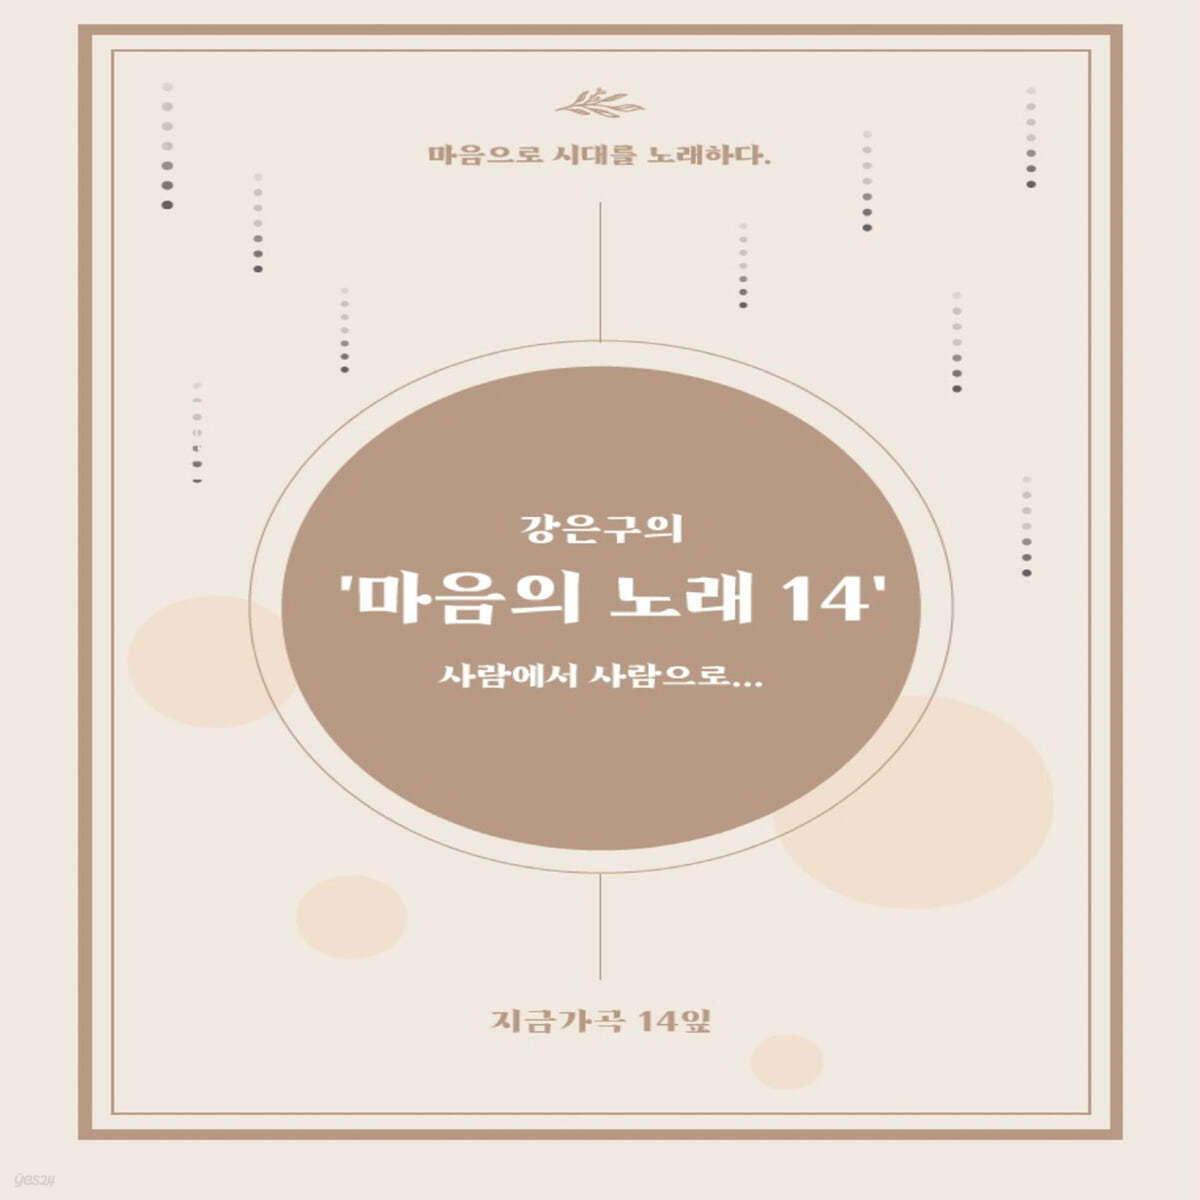 강은구 / 윤선애 - 마음의 노래 14